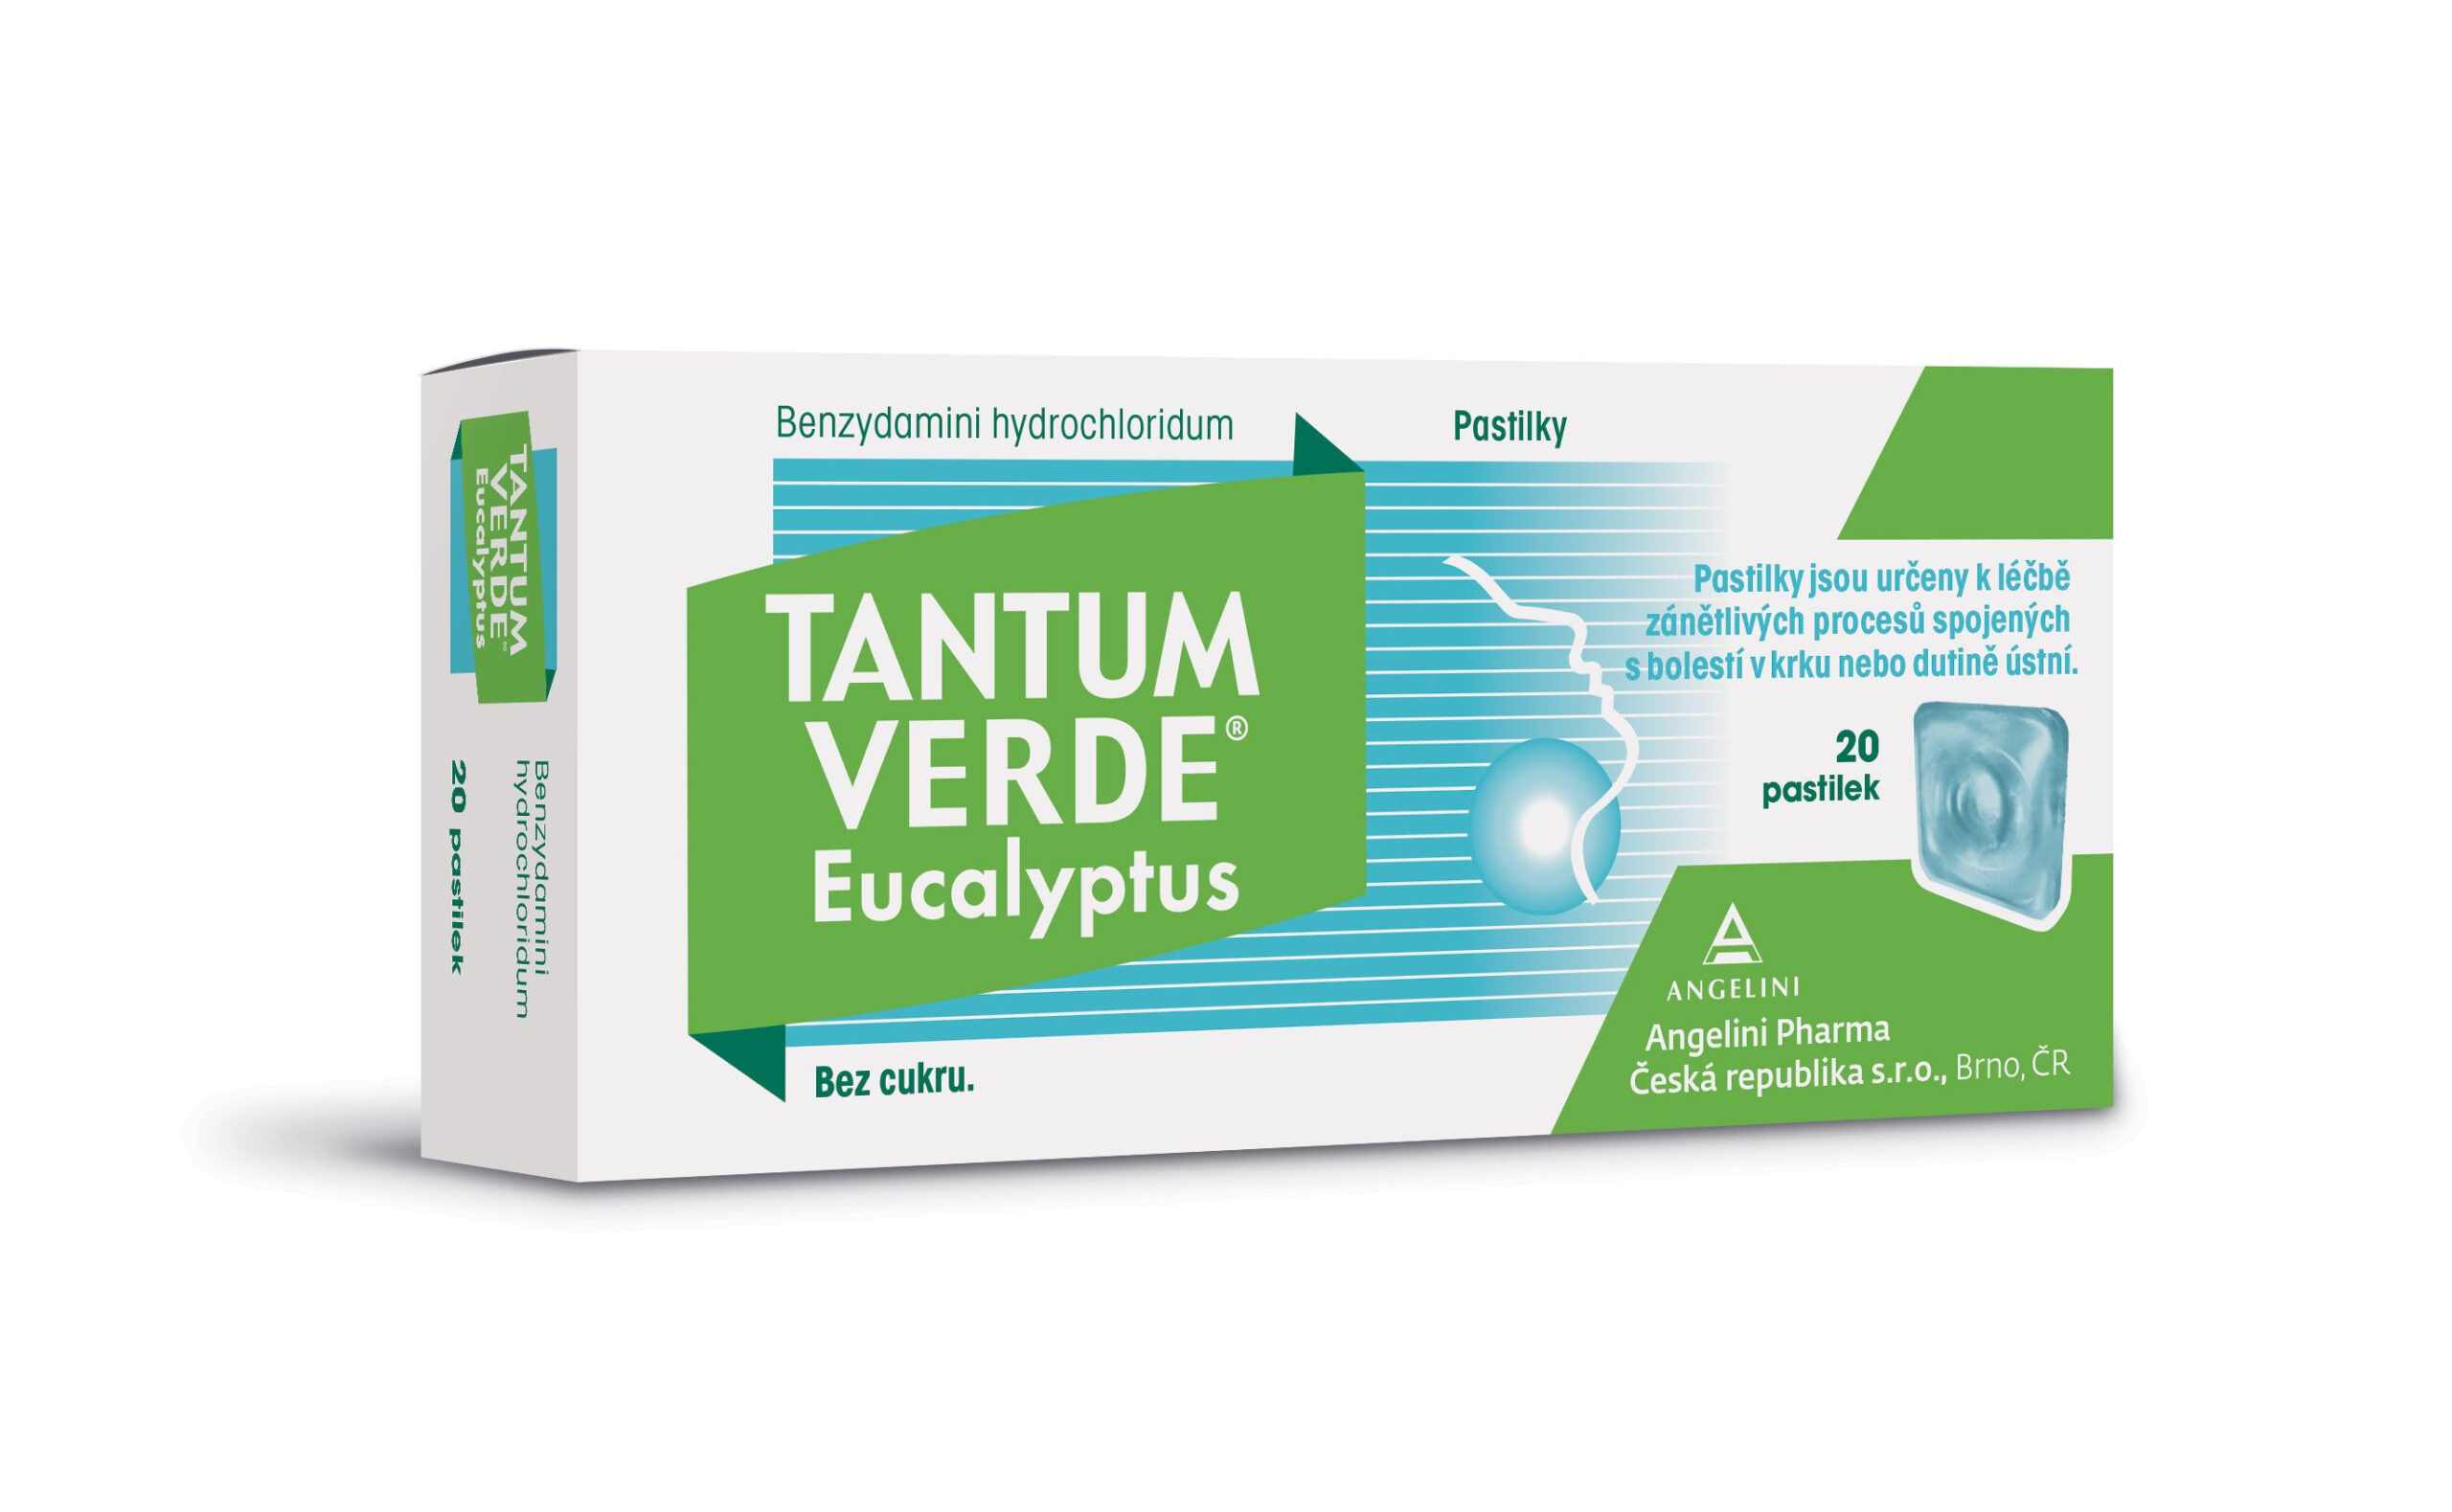 Tantum verde Eucalyptus 3 mg 20 pastilek Tantum verde